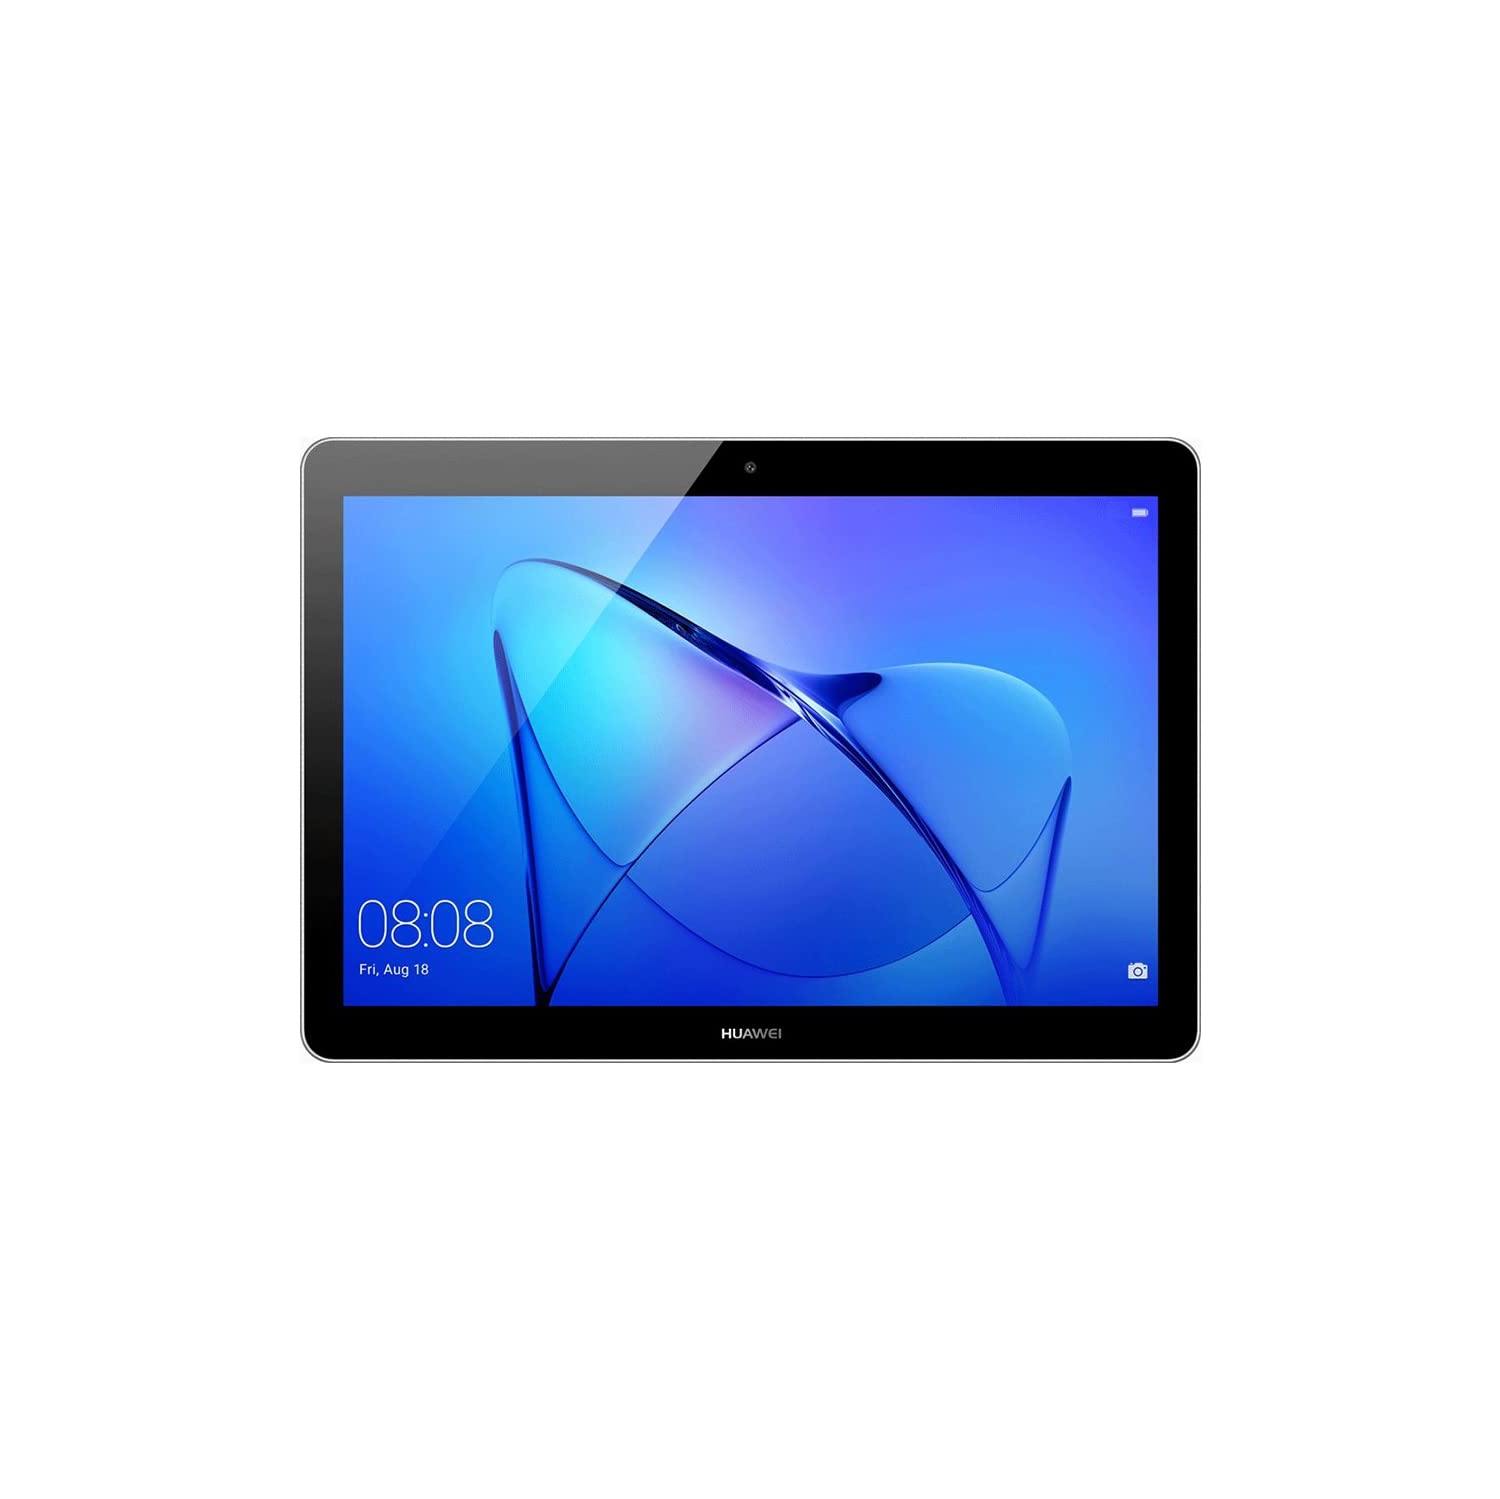 Huawei MediaPad T3 10 9.6" HD Tablet | Wide+ Cellular | Unlocked | 16GB/2GB | Open Box | Space Gray | International Model